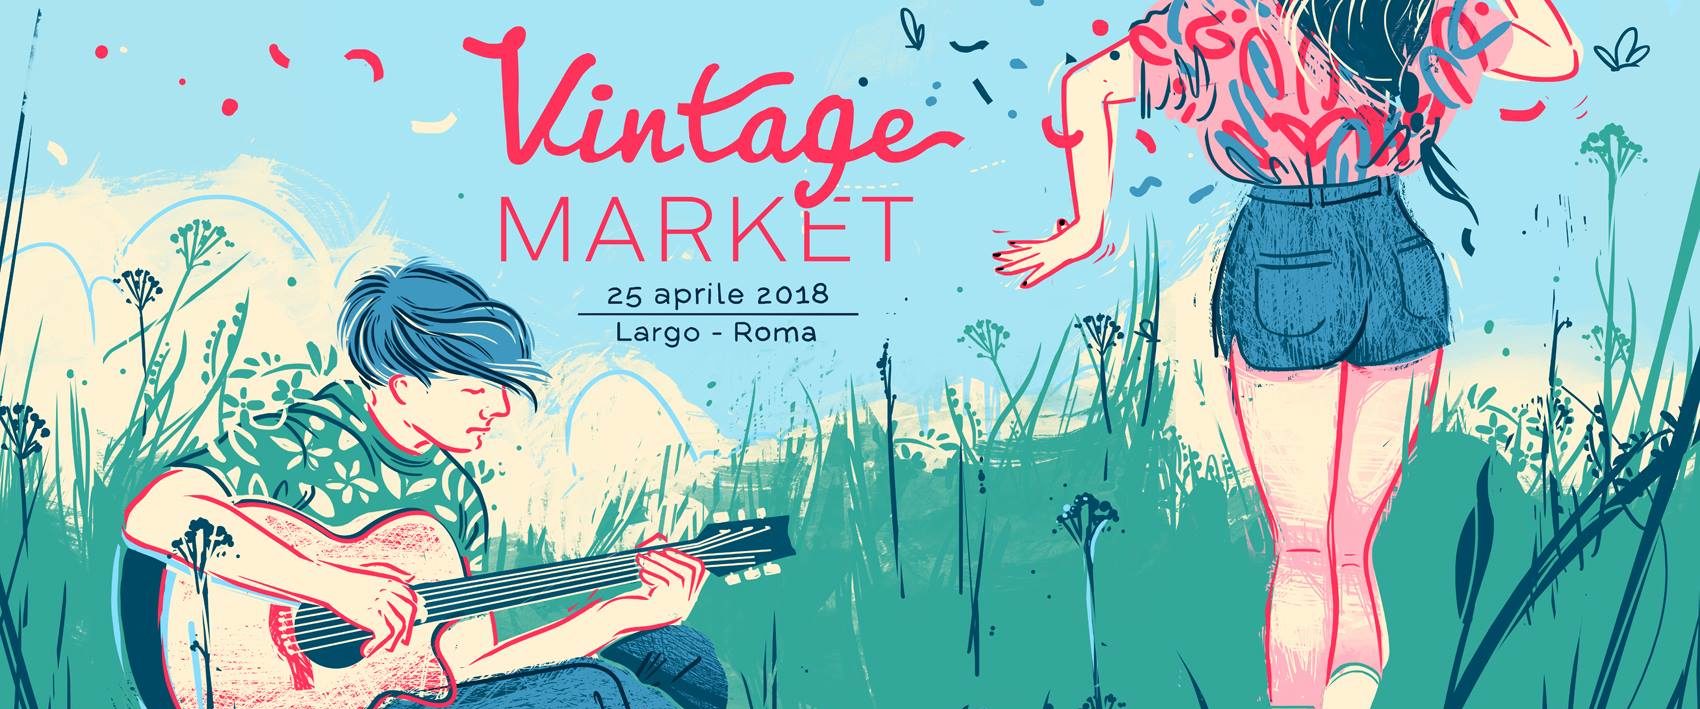 vintage market 25 aprile 2018